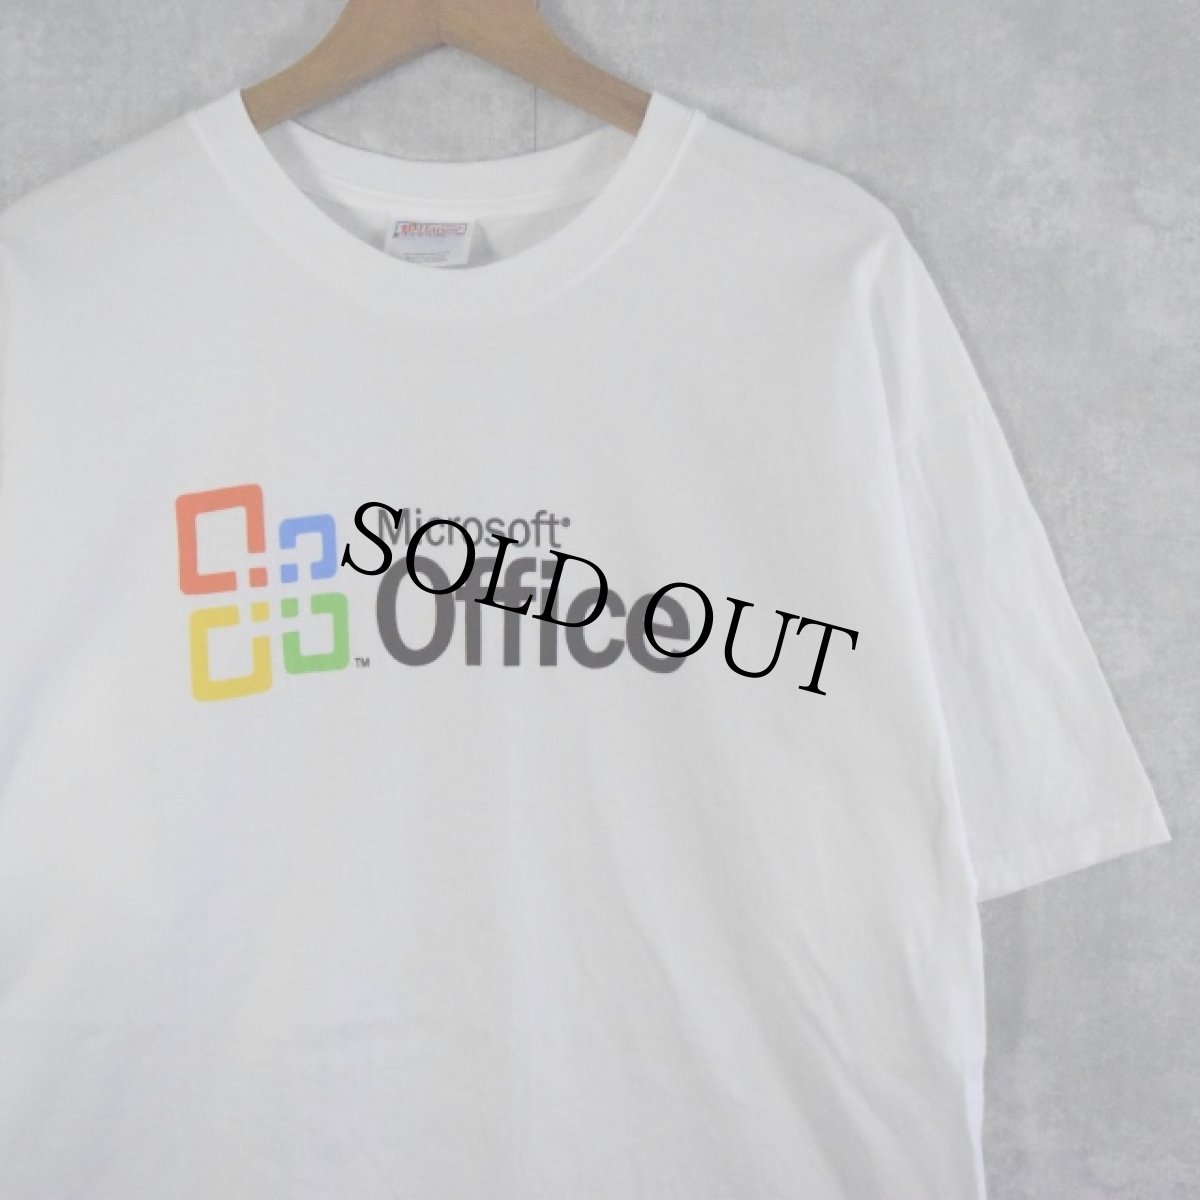 画像1: Microsoft Office 企業ロゴプリントTシャツ L (1)